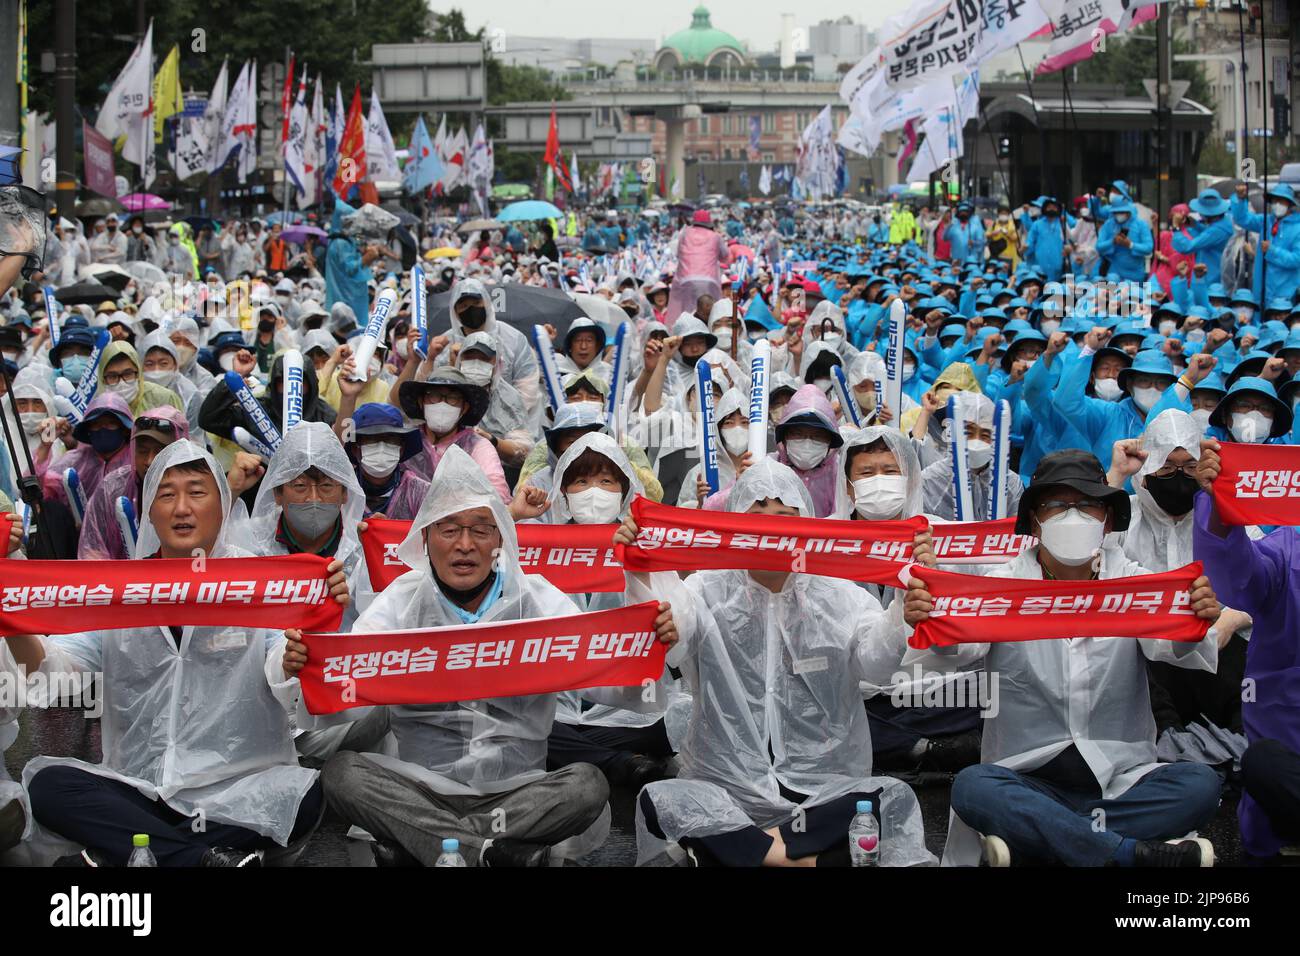 (220816) -- SÉOUL, le 16 août 2022 (Xinhua) -- des gens se rassemblent pour protester contre les exercices militaires prévus entre la Corée du Sud et les États-Unis à Séoul, en Corée du Sud, le 13 août 2022. Mardi, les forces combinées de la Corée du Sud et des États-Unis ont lancé des exercices militaires annuels comme prévu, trois jours après que les militants libéraux aient organisé un rassemblement massif pour protester contre ce mouvement. Samedi, des milliers d'activistes libéraux se sont rassemblés dans le centre de Séoul pour protester contre les jeux de guerre prévus entre la Corée du Sud et les États-Unis. (NEWSIS via Xinhua) Banque D'Images